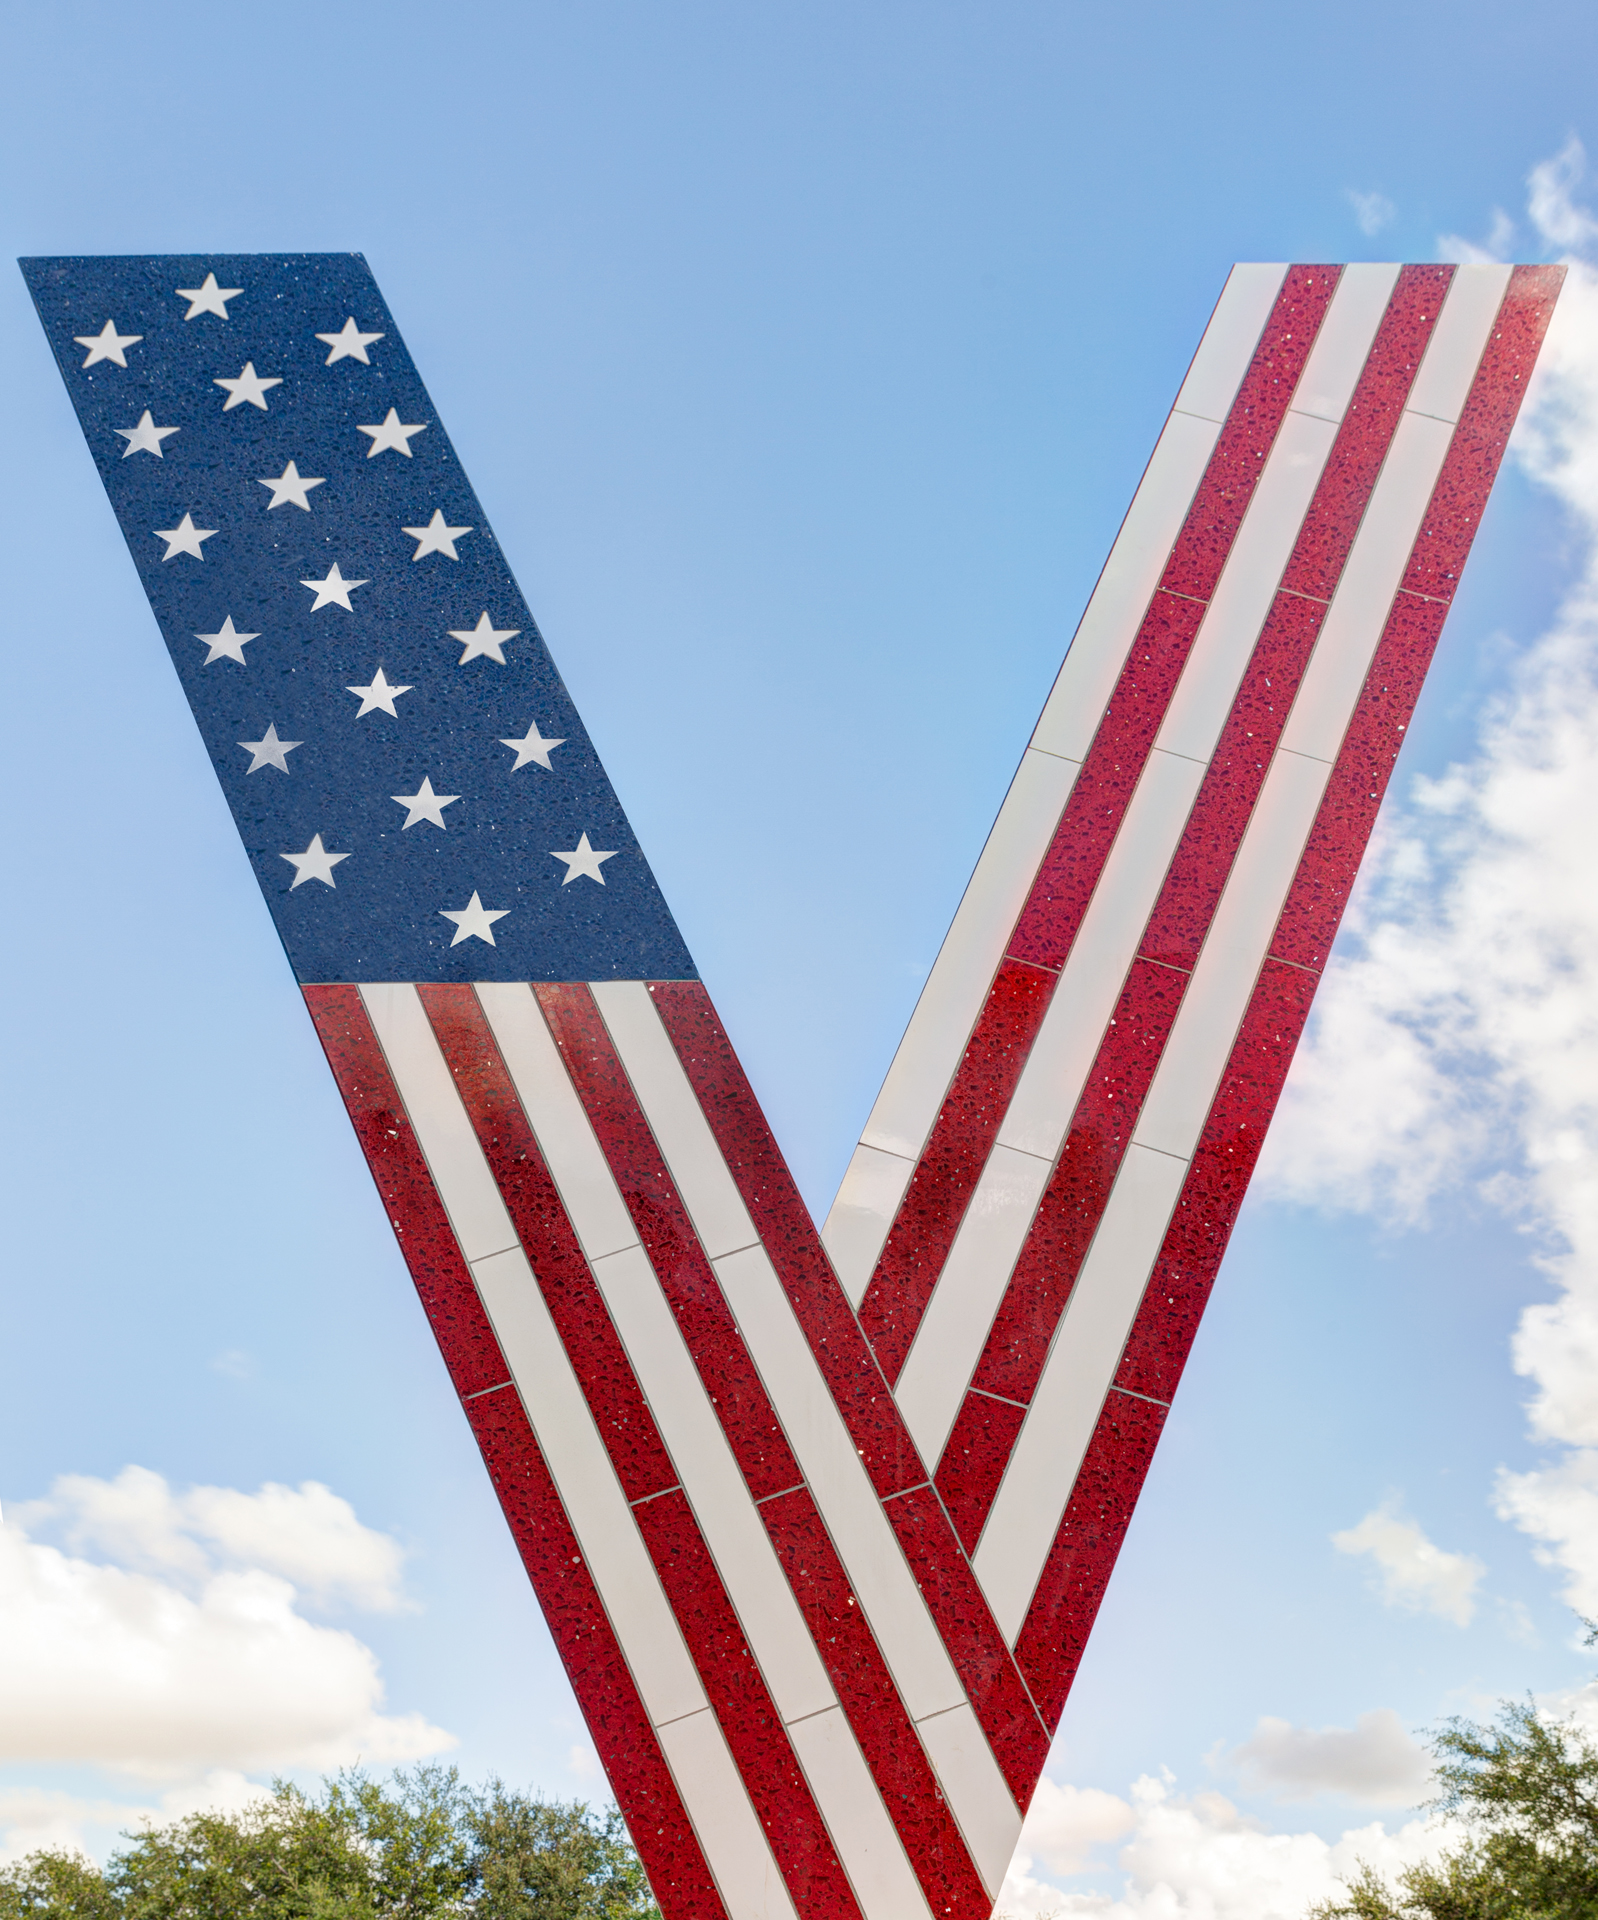 V is for Veterans